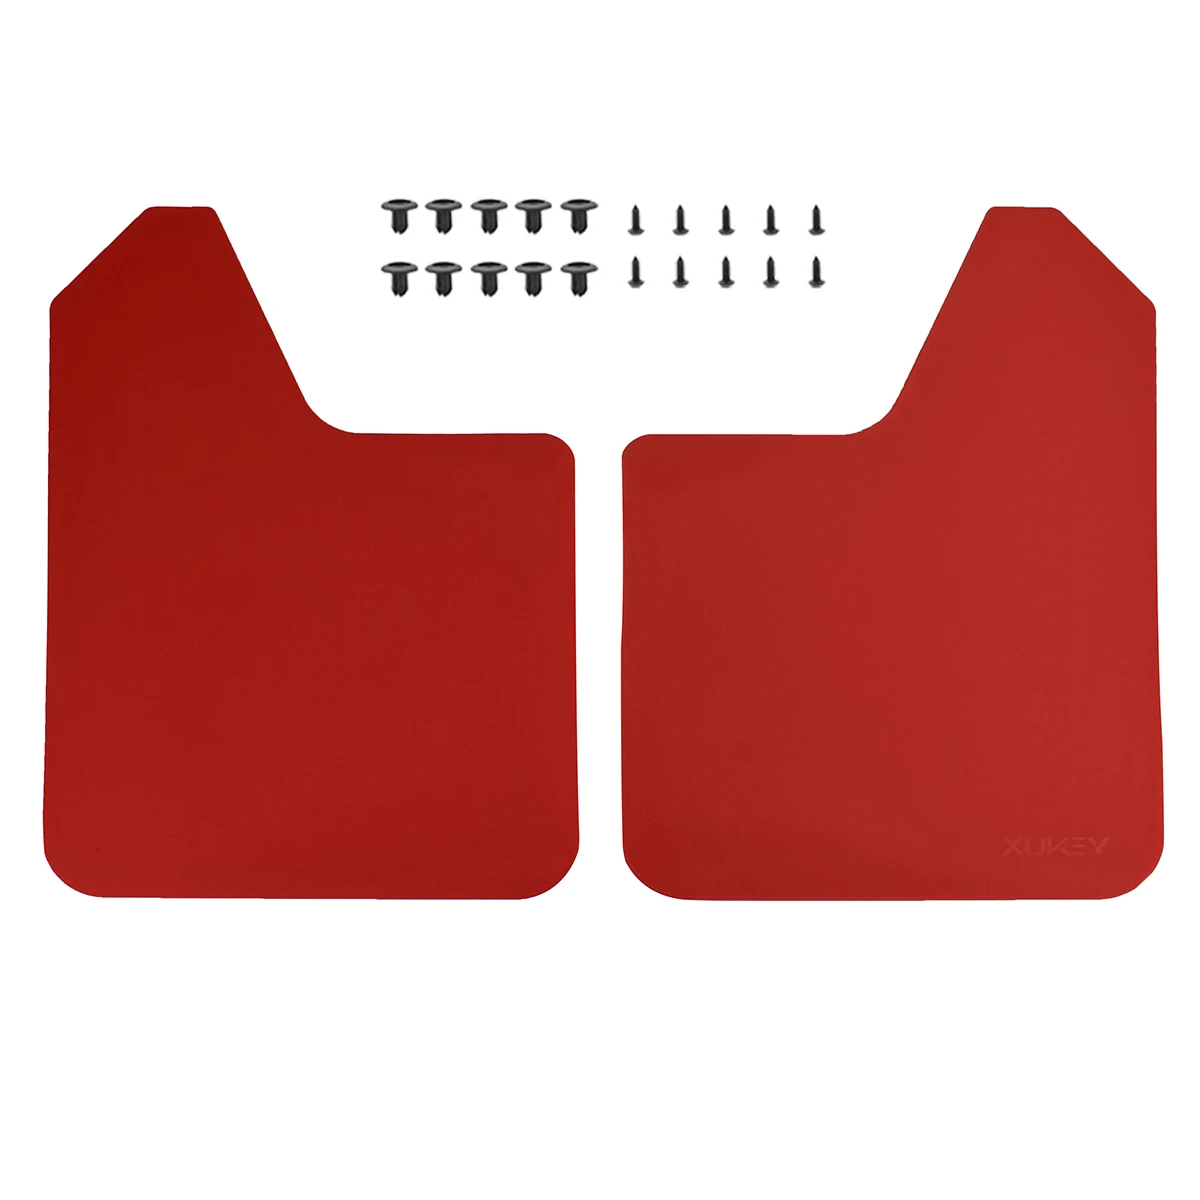 Ралли брызговики брызговик брызговики для Mazda CX-5 Бонго Familia фура peugeot 108 206 207 208 301 307 308 GTI - Color: 2pcs-set Red